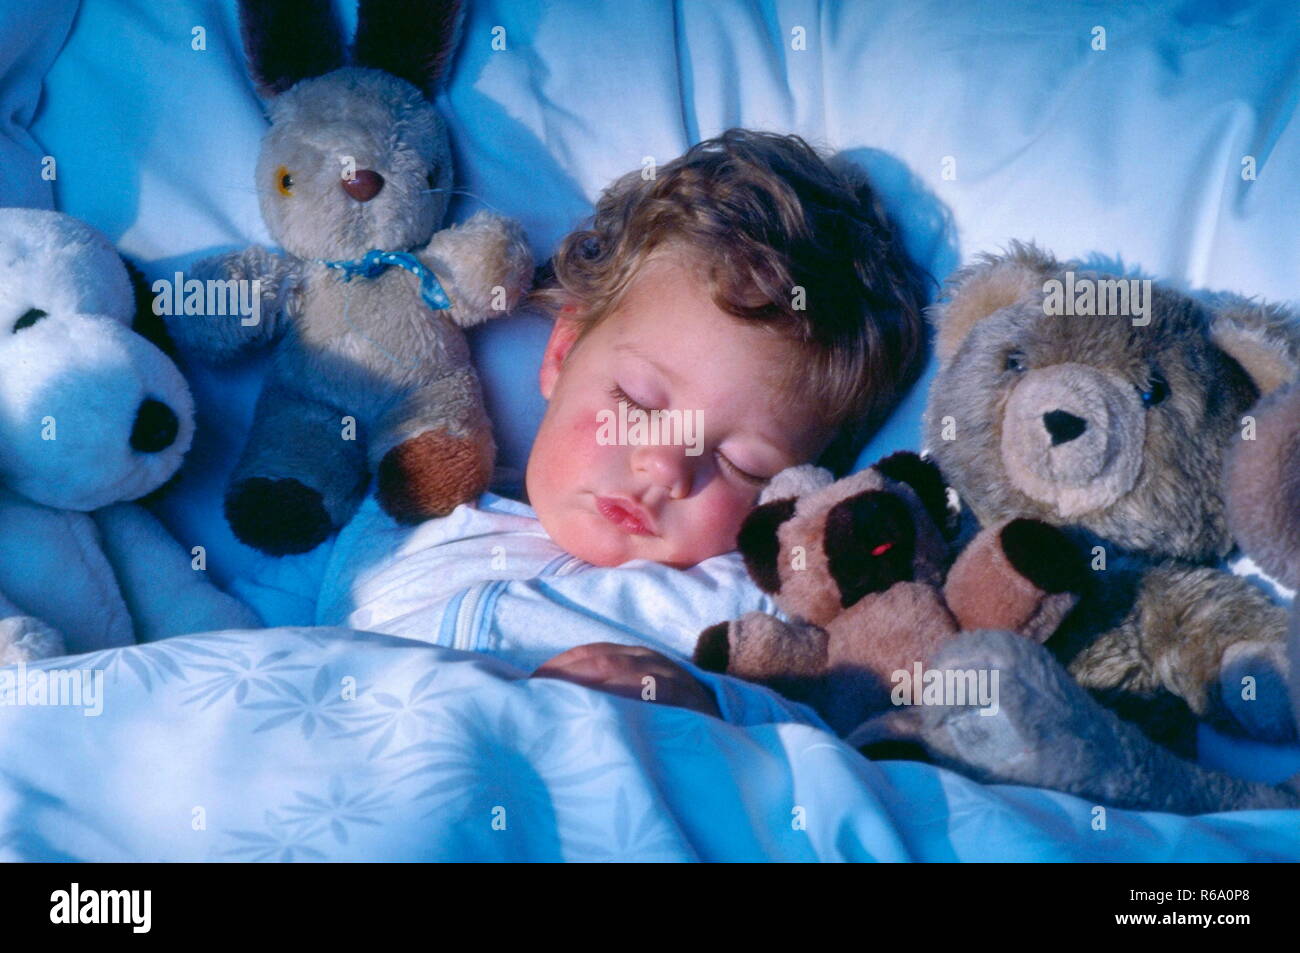 Portrait, blondgelocktes Kleinkind schlaeft friedlich an seine Stofftiere gekuschelt in weisser Damastbettwaesche Stock Photo